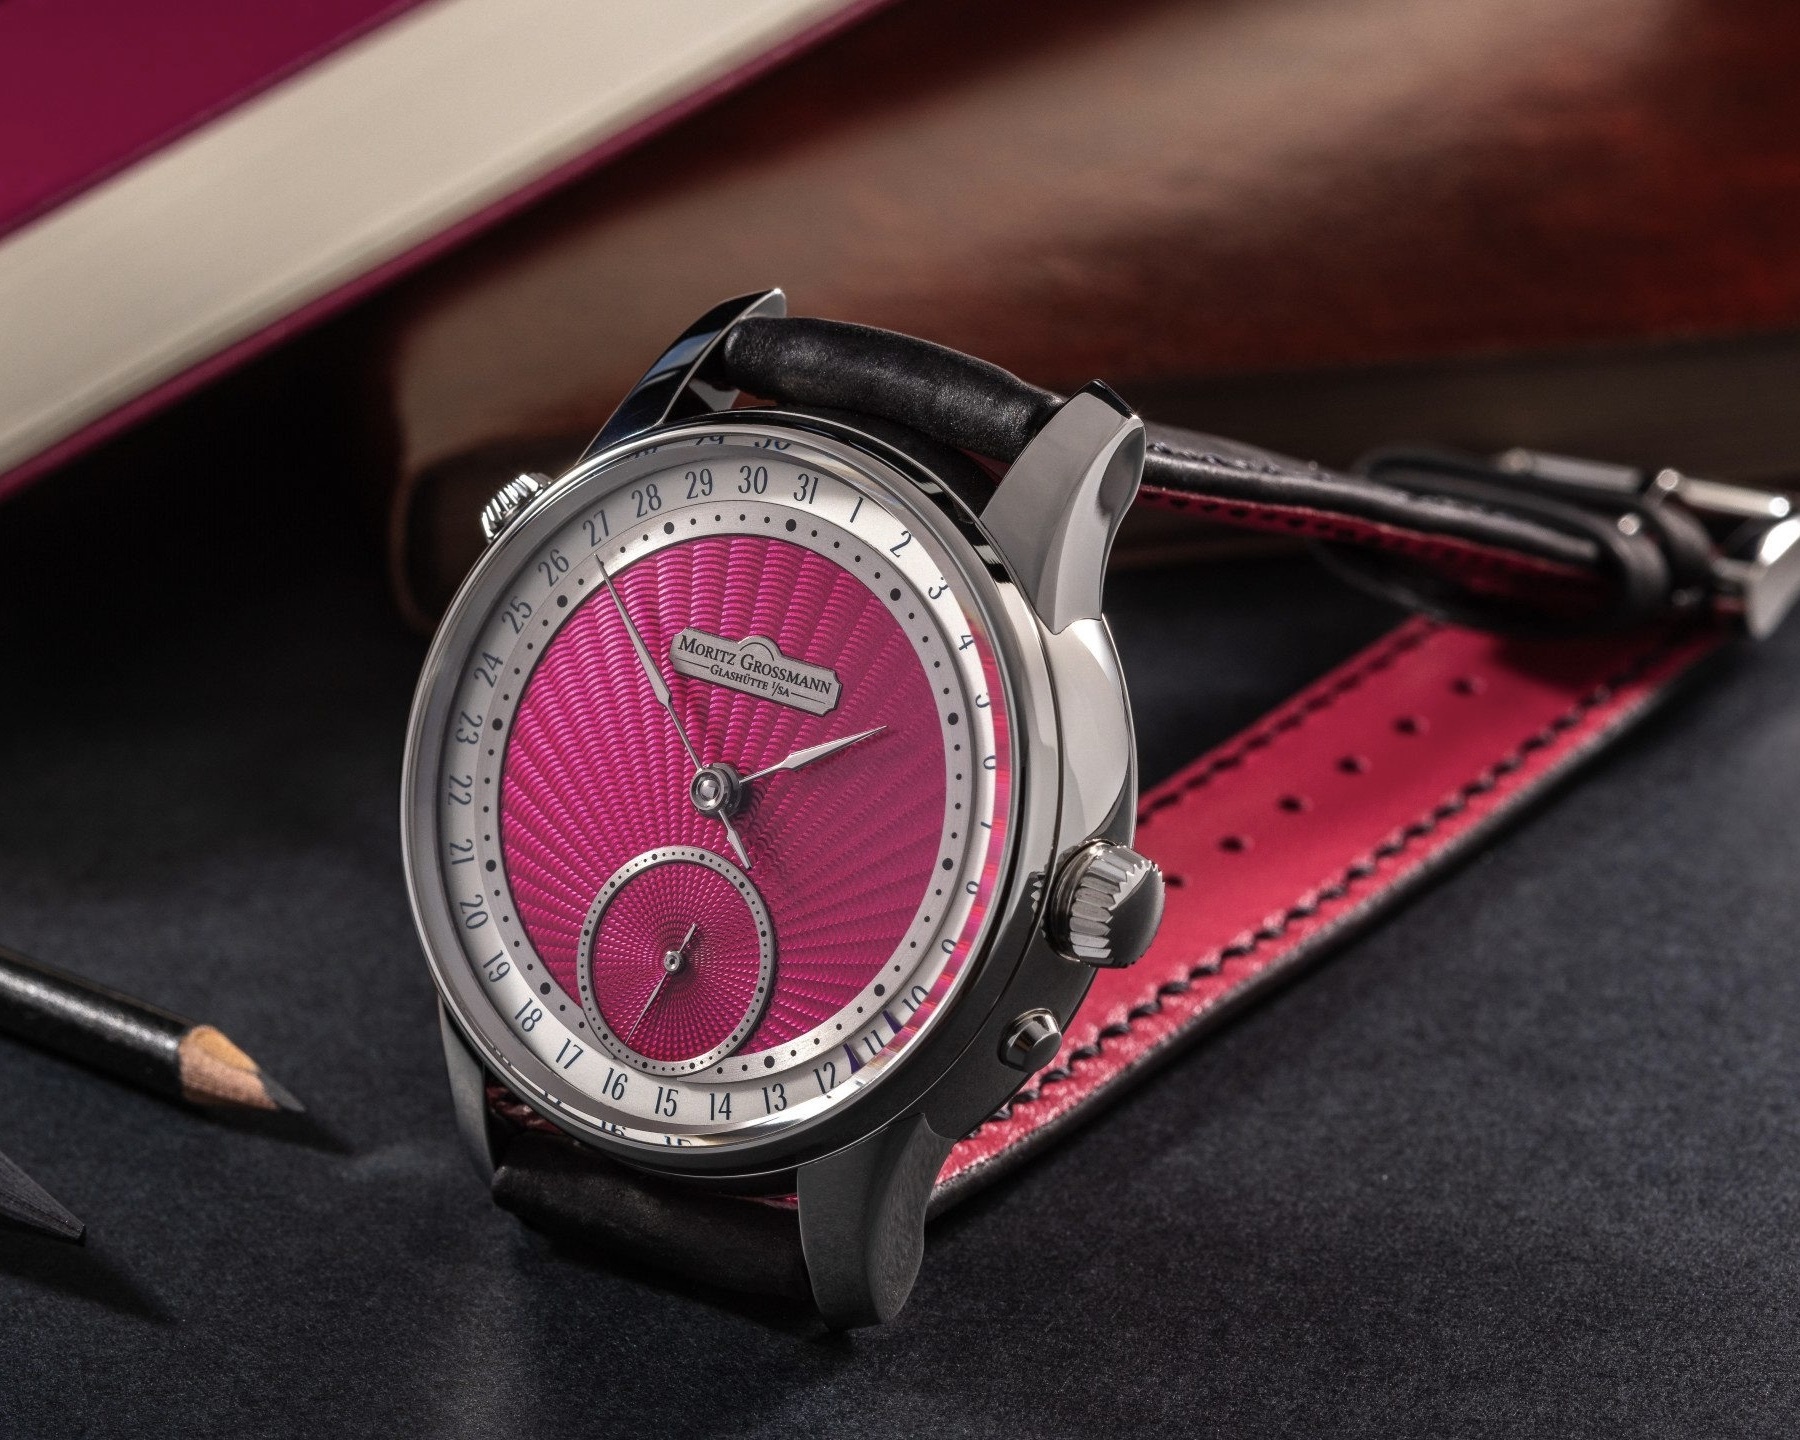 Màu hồng nam tính của đồng hồ 76.000 USD